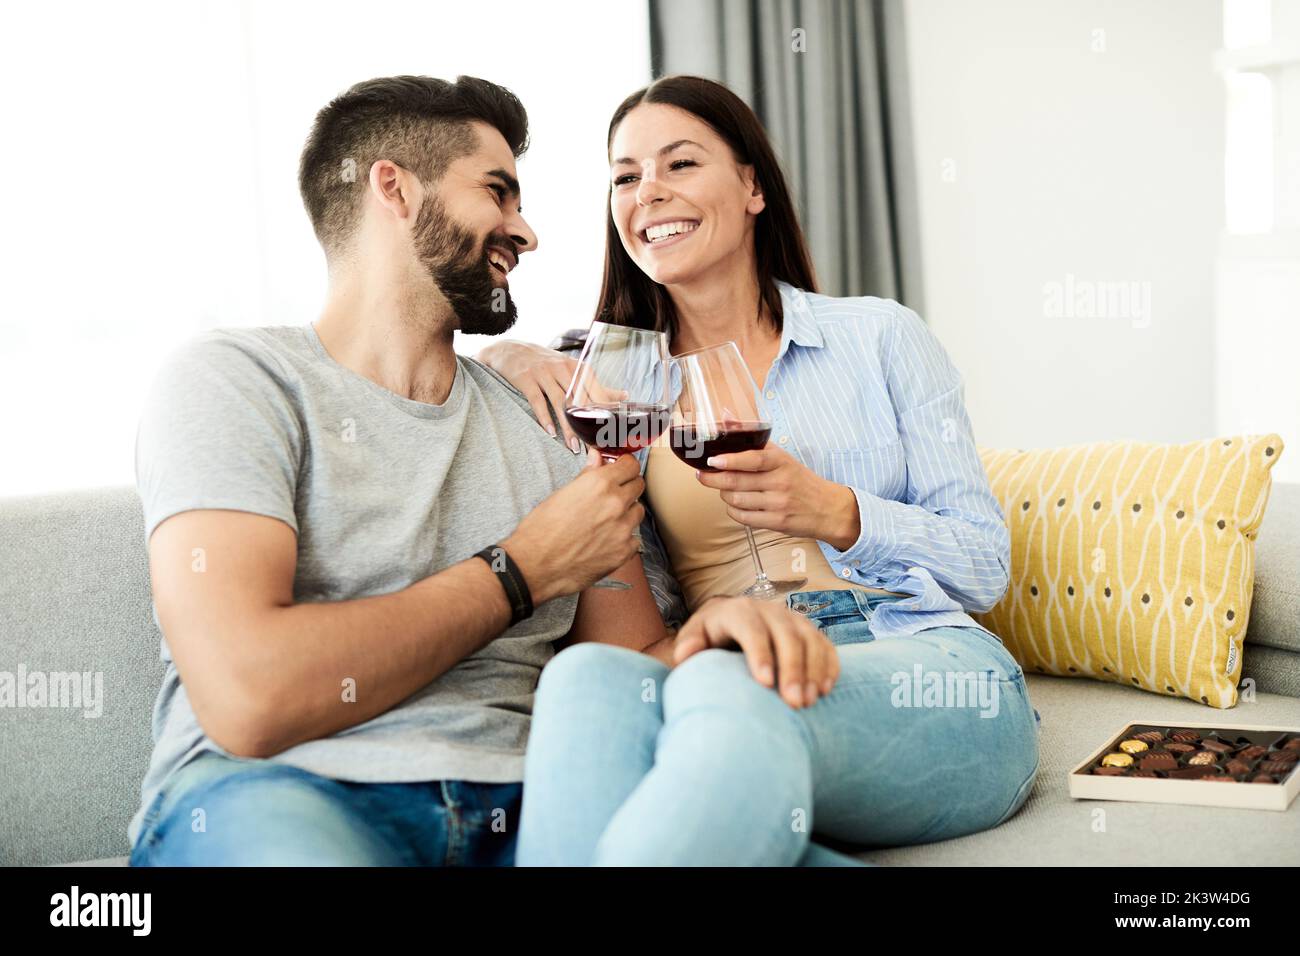 Porträt eines hübschen jungen Paares, das zu Hause auf dem Sofa zusammen Wein trinkt Stockfoto